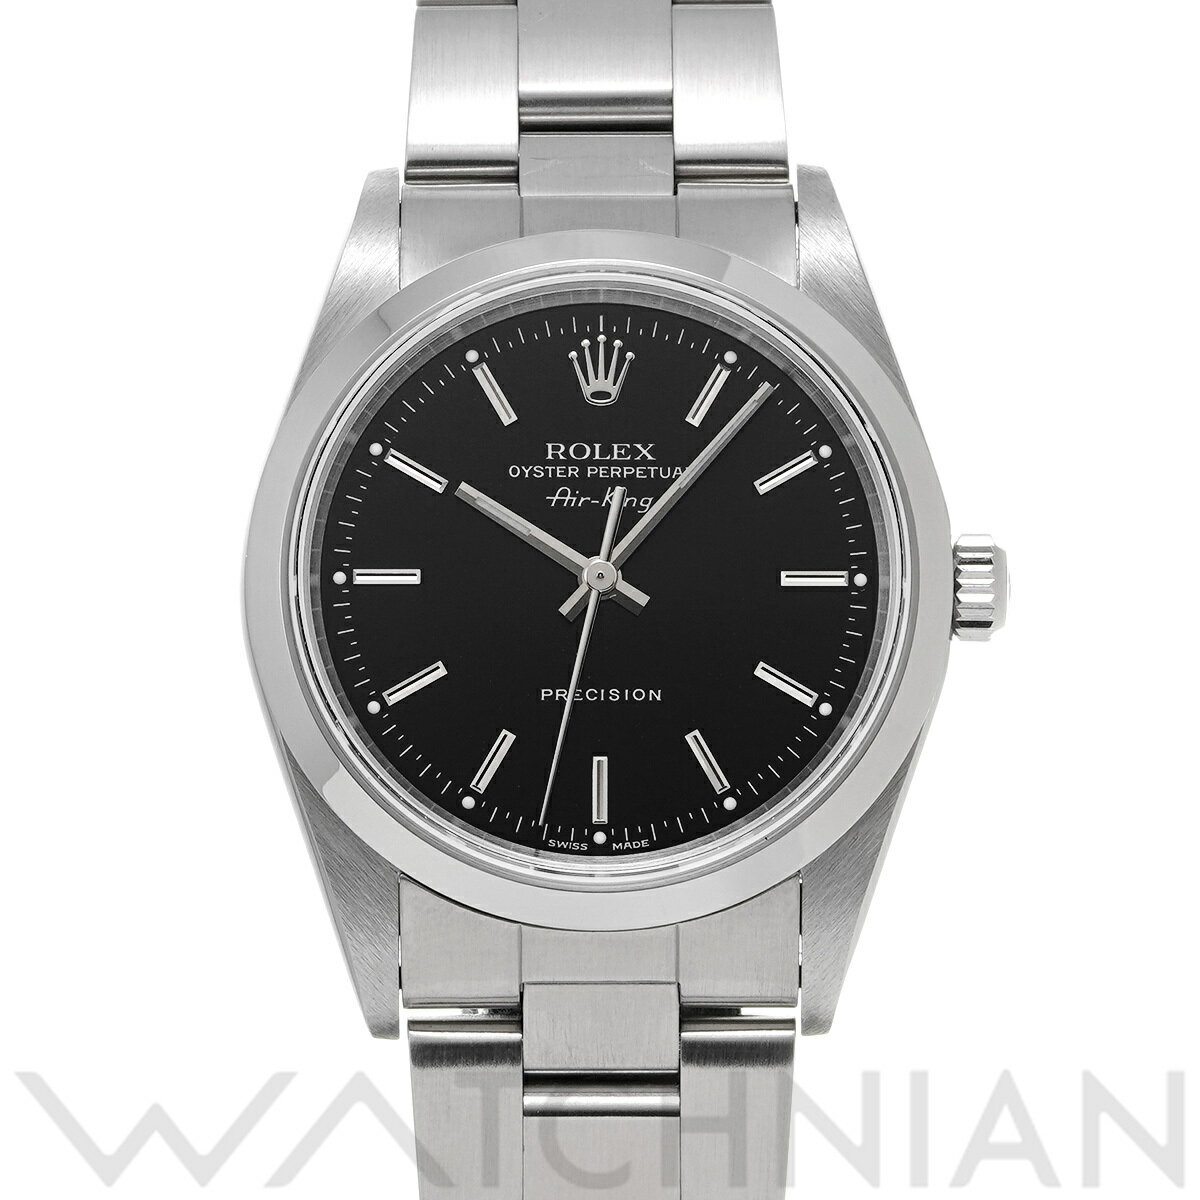 【4種選べるクーポン】【ローン60回払い無金利】【中古】 ロレックス ROLEX エアキング 14000M K番(2002年頃製造) ブラック メンズ 腕時計 ロレックス 時計 高級腕時計 ブランド